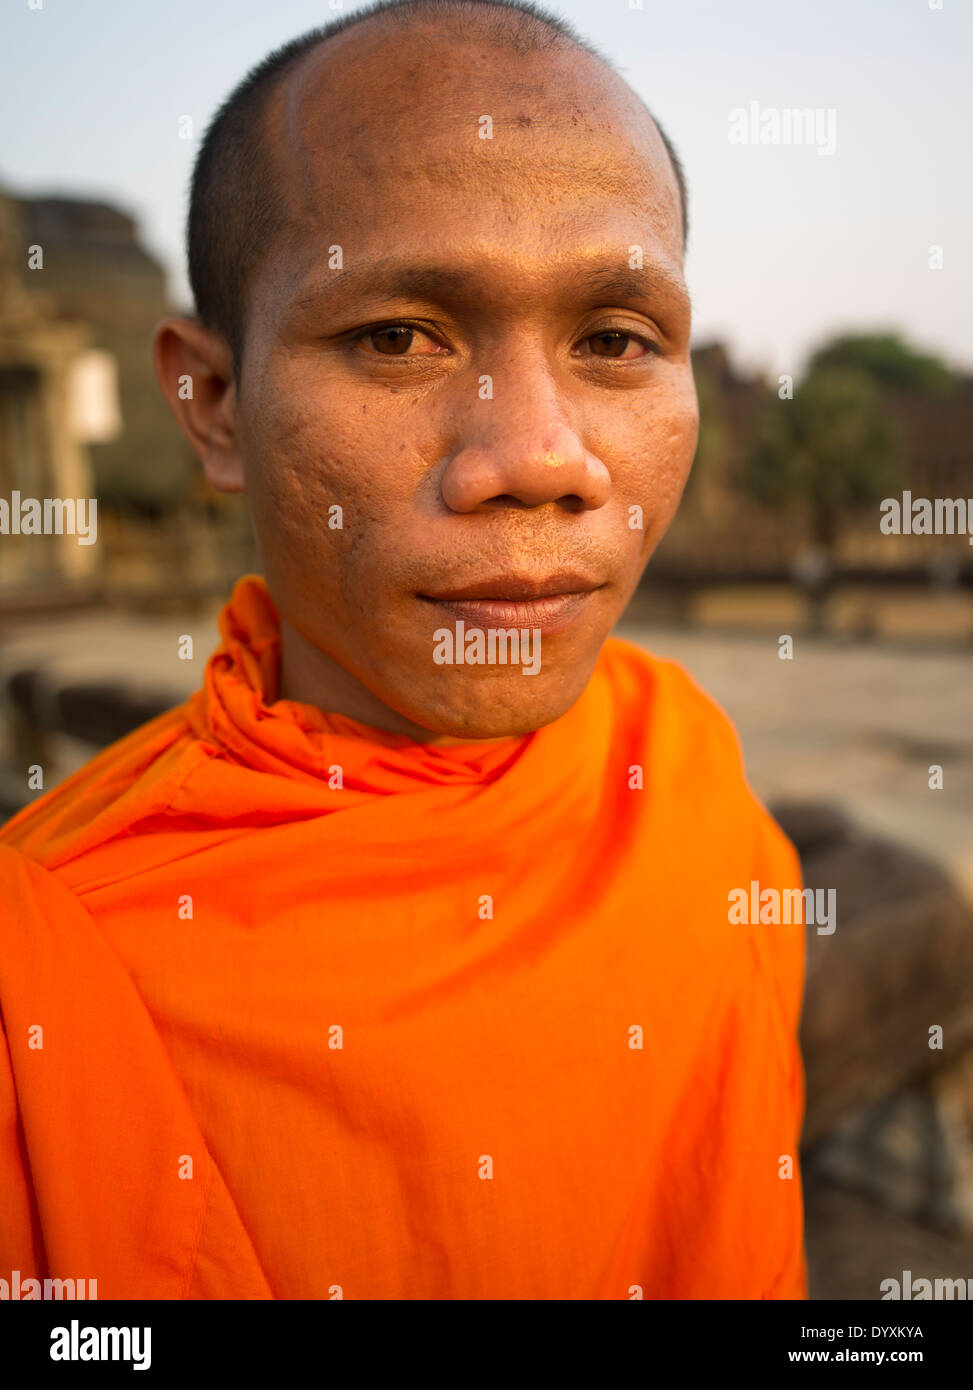 Nheam un monje budista camboyano de Angkor Wat, Patrimonio de la Humanidad de la UNESCO. En Siem Reap, Camboya Foto de stock